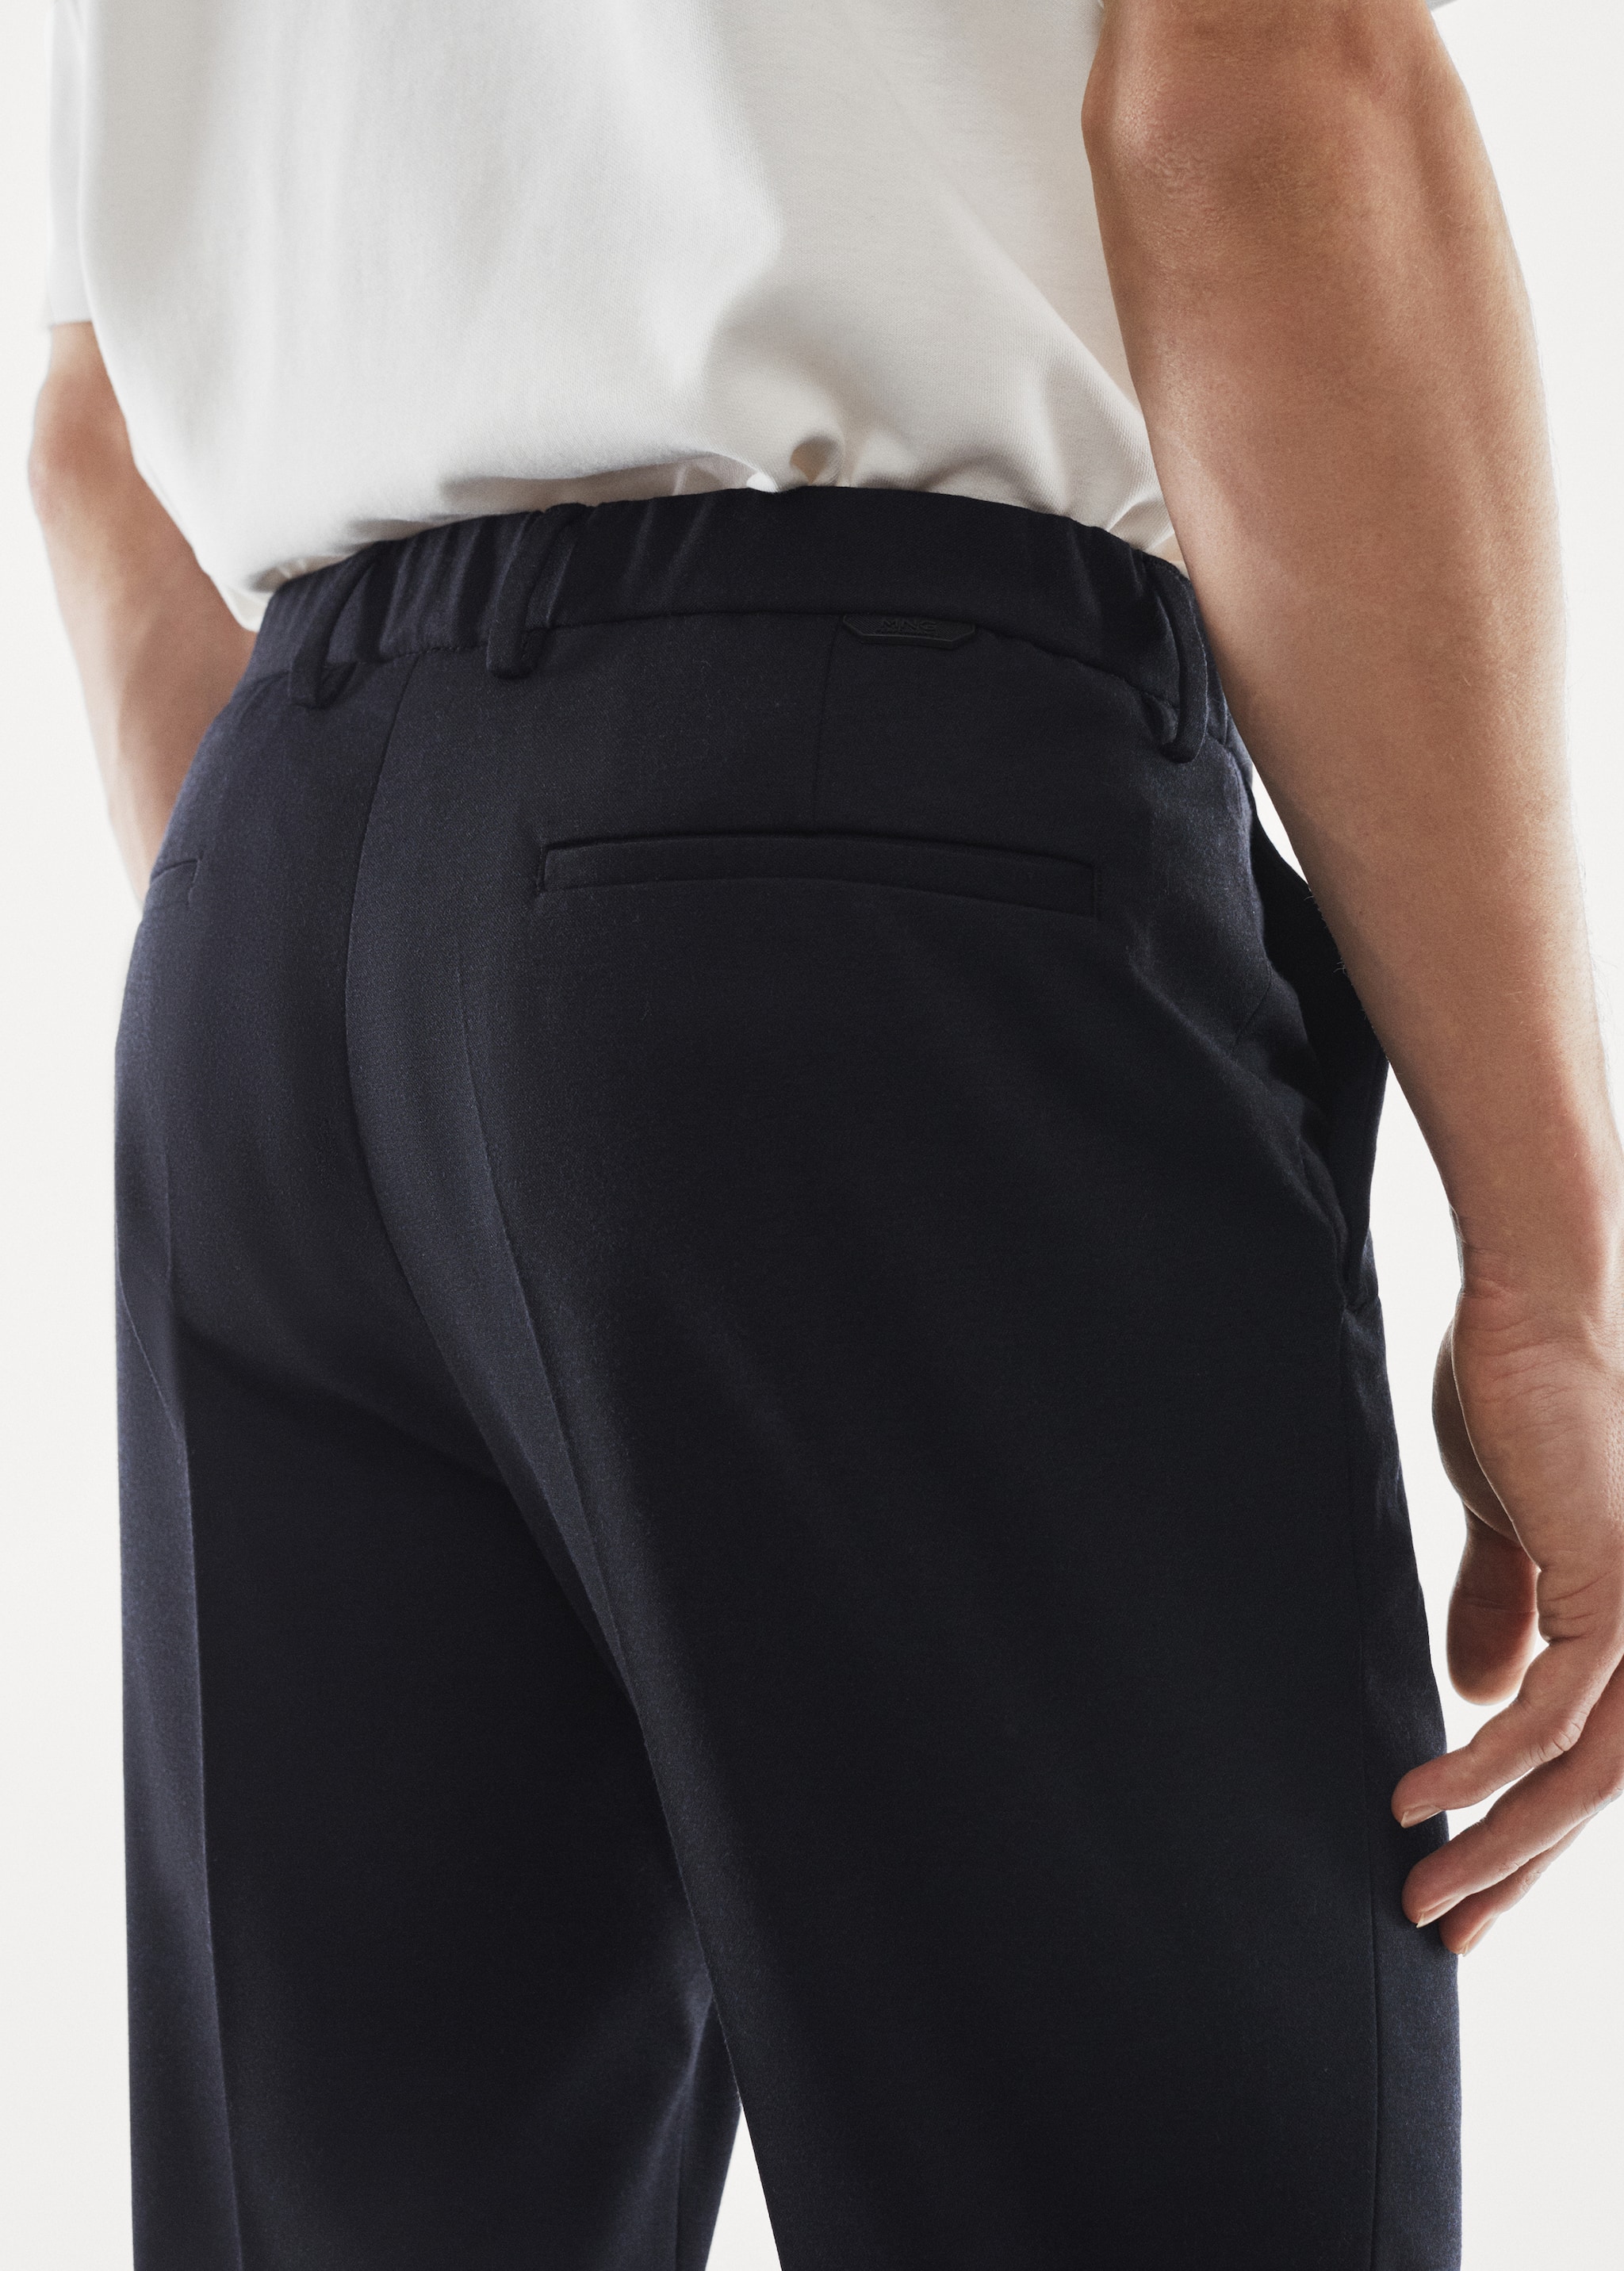 Pantalons vestir slim fit textura - Detall de l'article 4